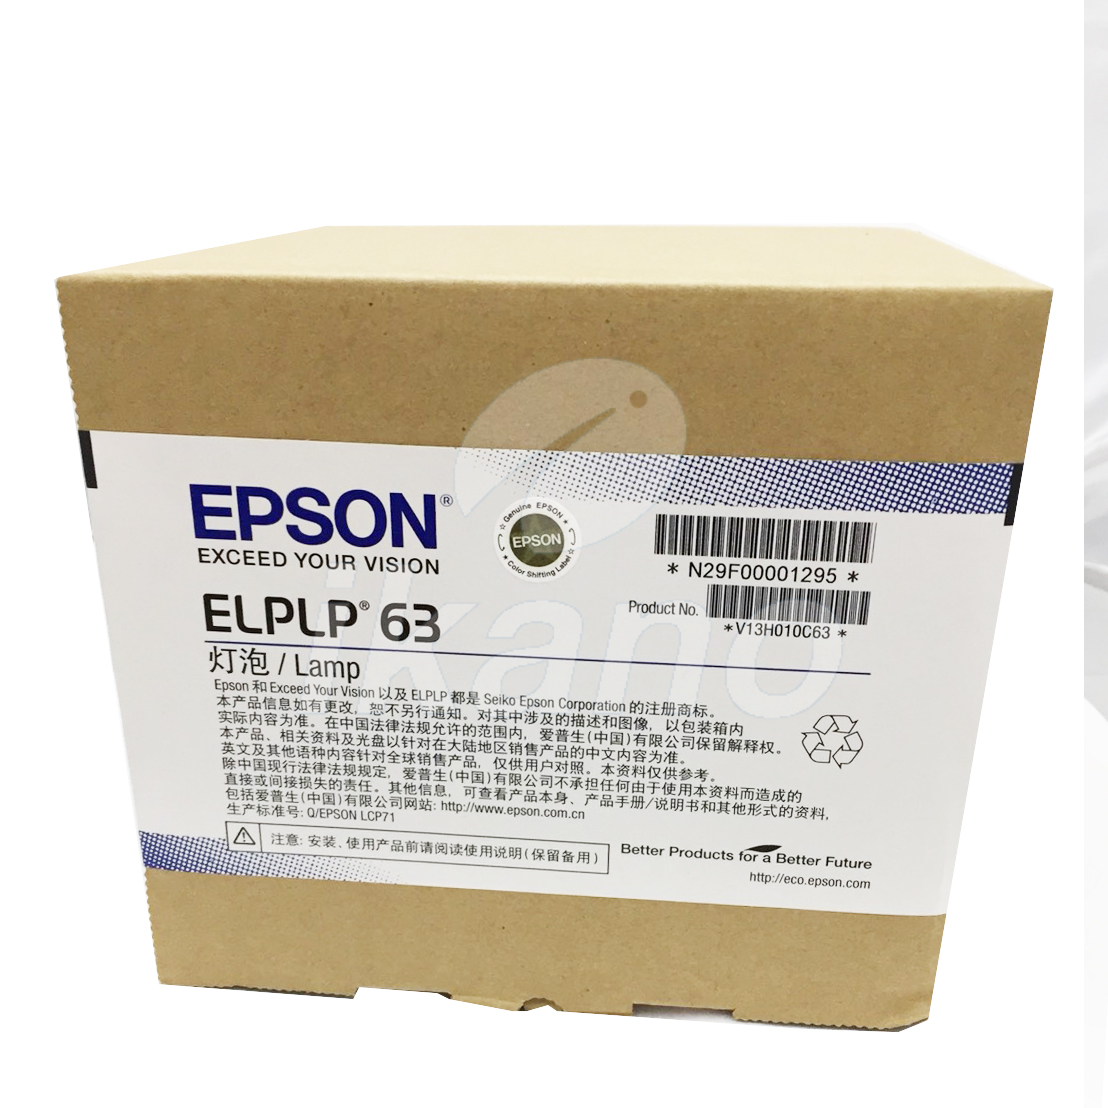 EPSON-原廠原封包廠投影機燈泡ELPLP63 / 適用機型EB-G5950